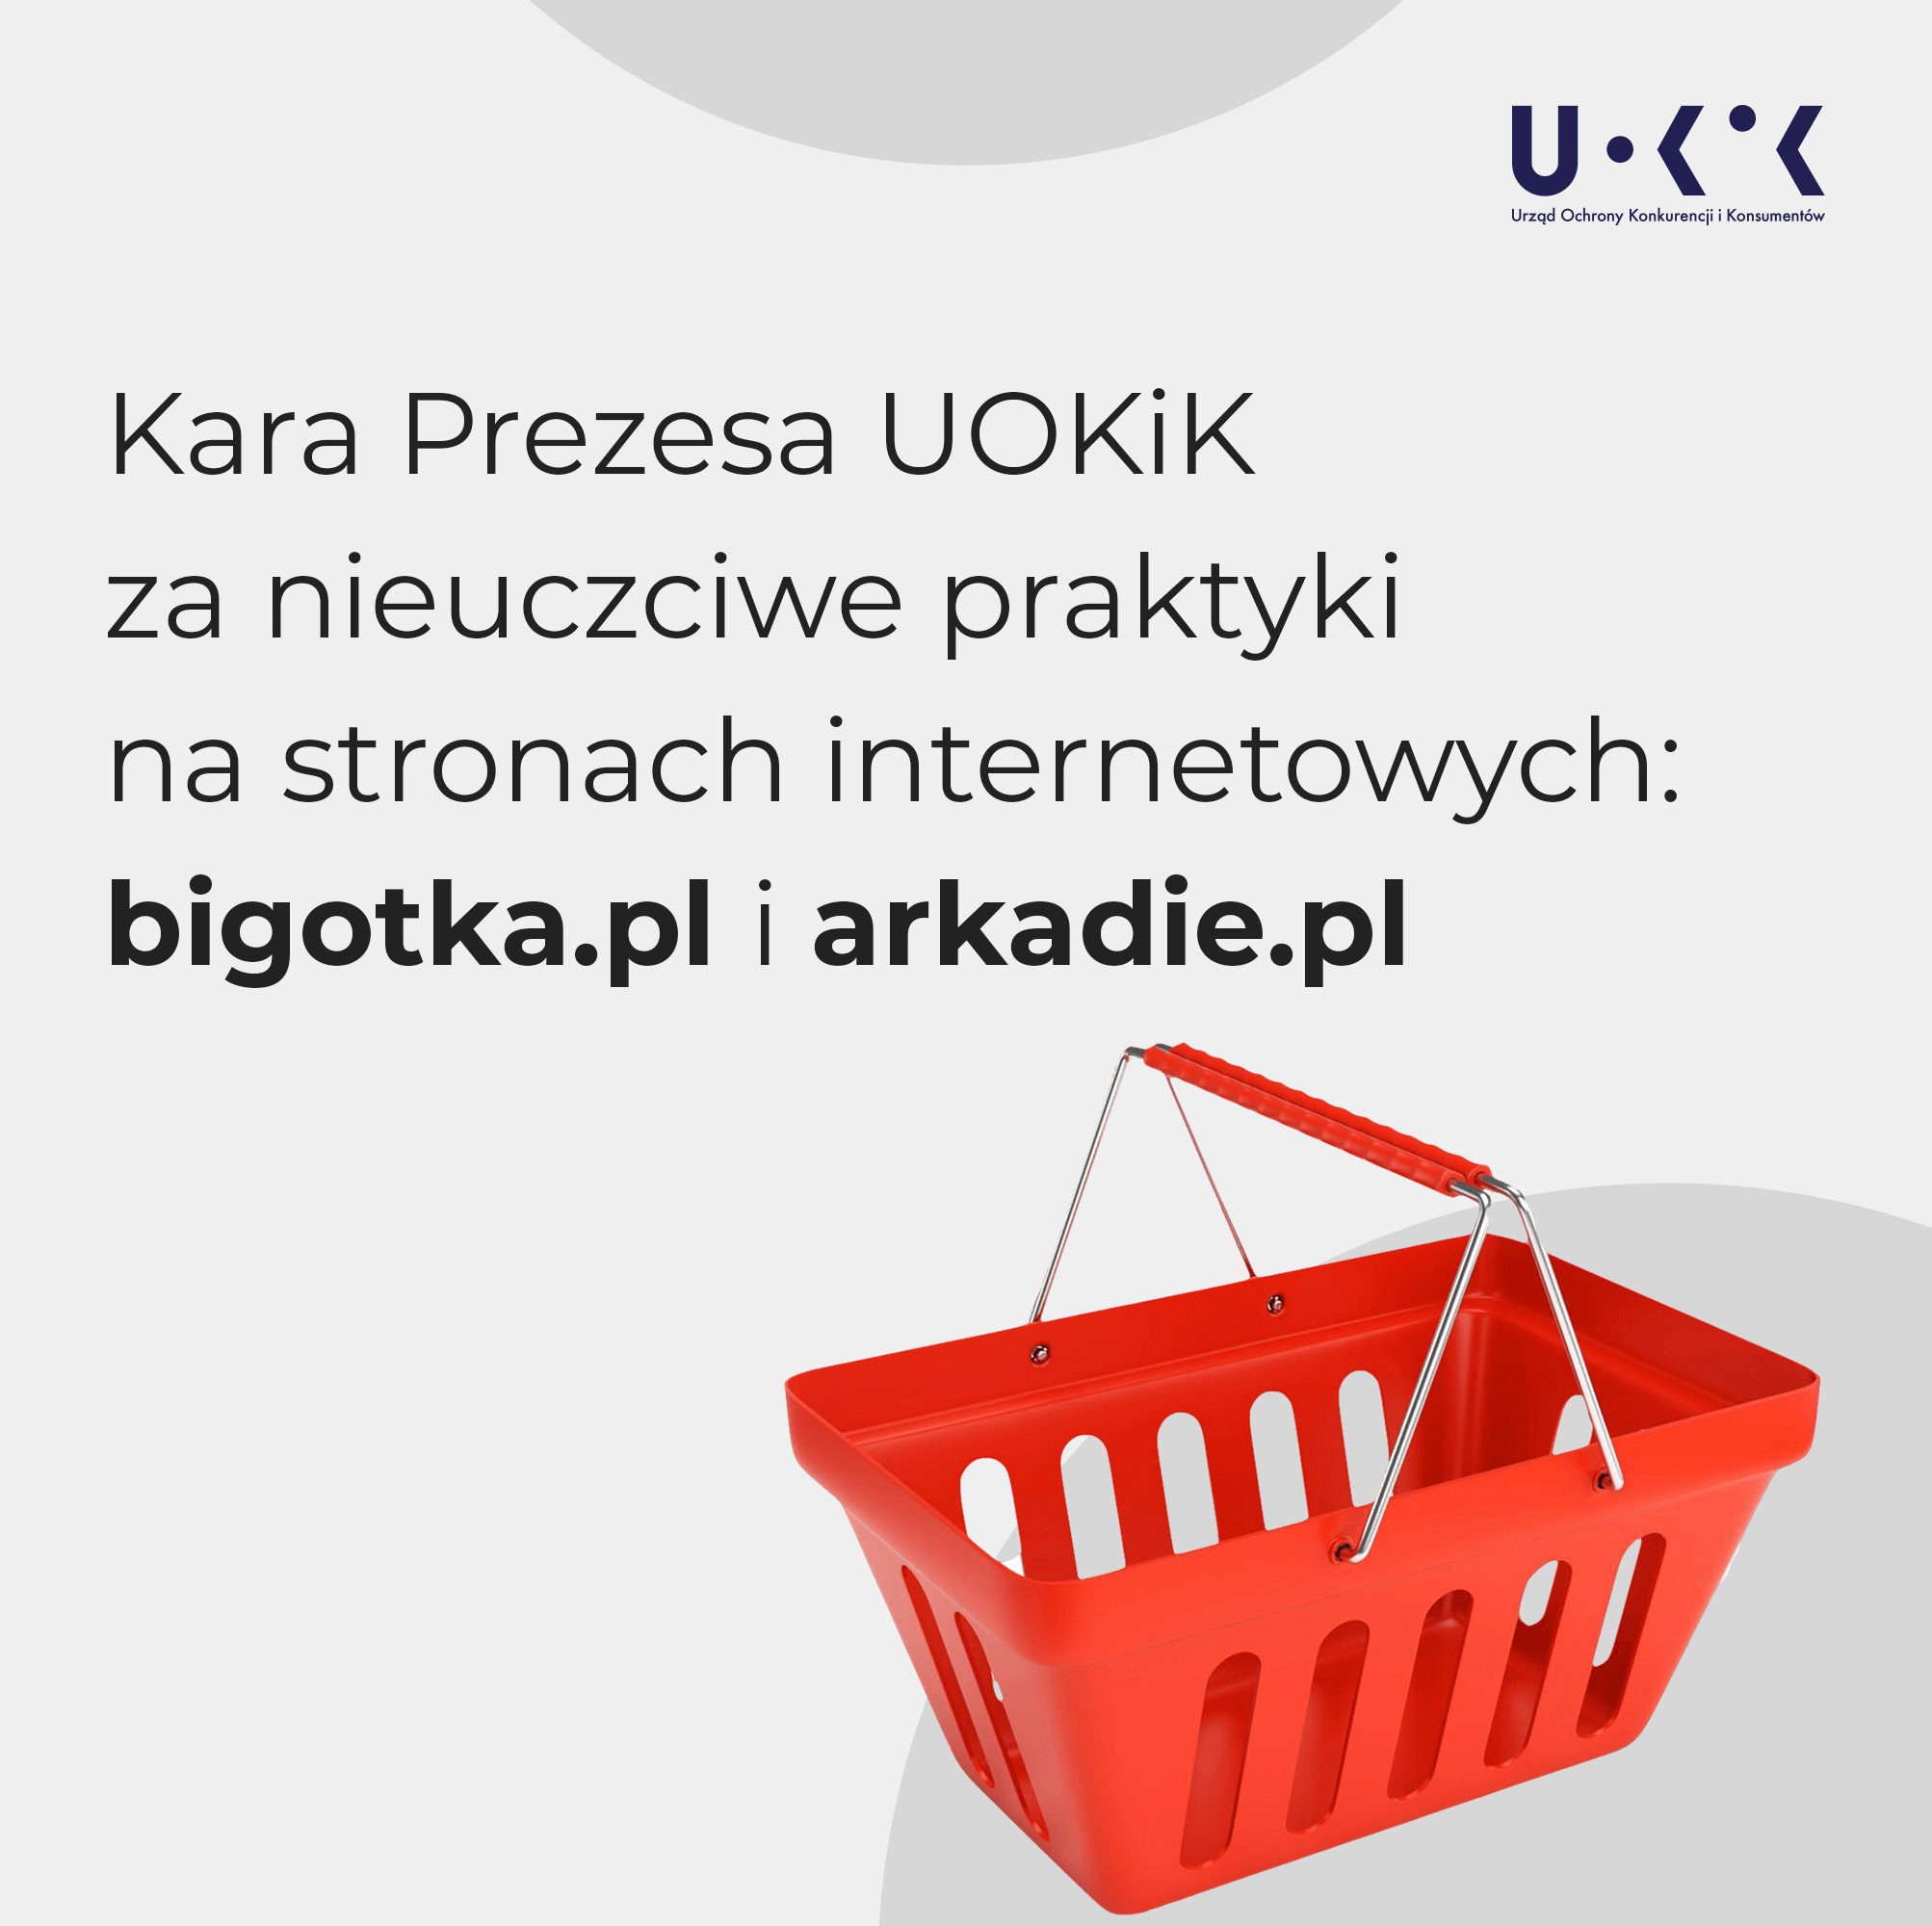 Kara Prezesa UOKiK za nieuczciwe praktyki na stronach internetowych: bigotka.pl i arkadie.pl. Powyżej logo UOKiK, poniżej czerwony koszyk zakupowy.